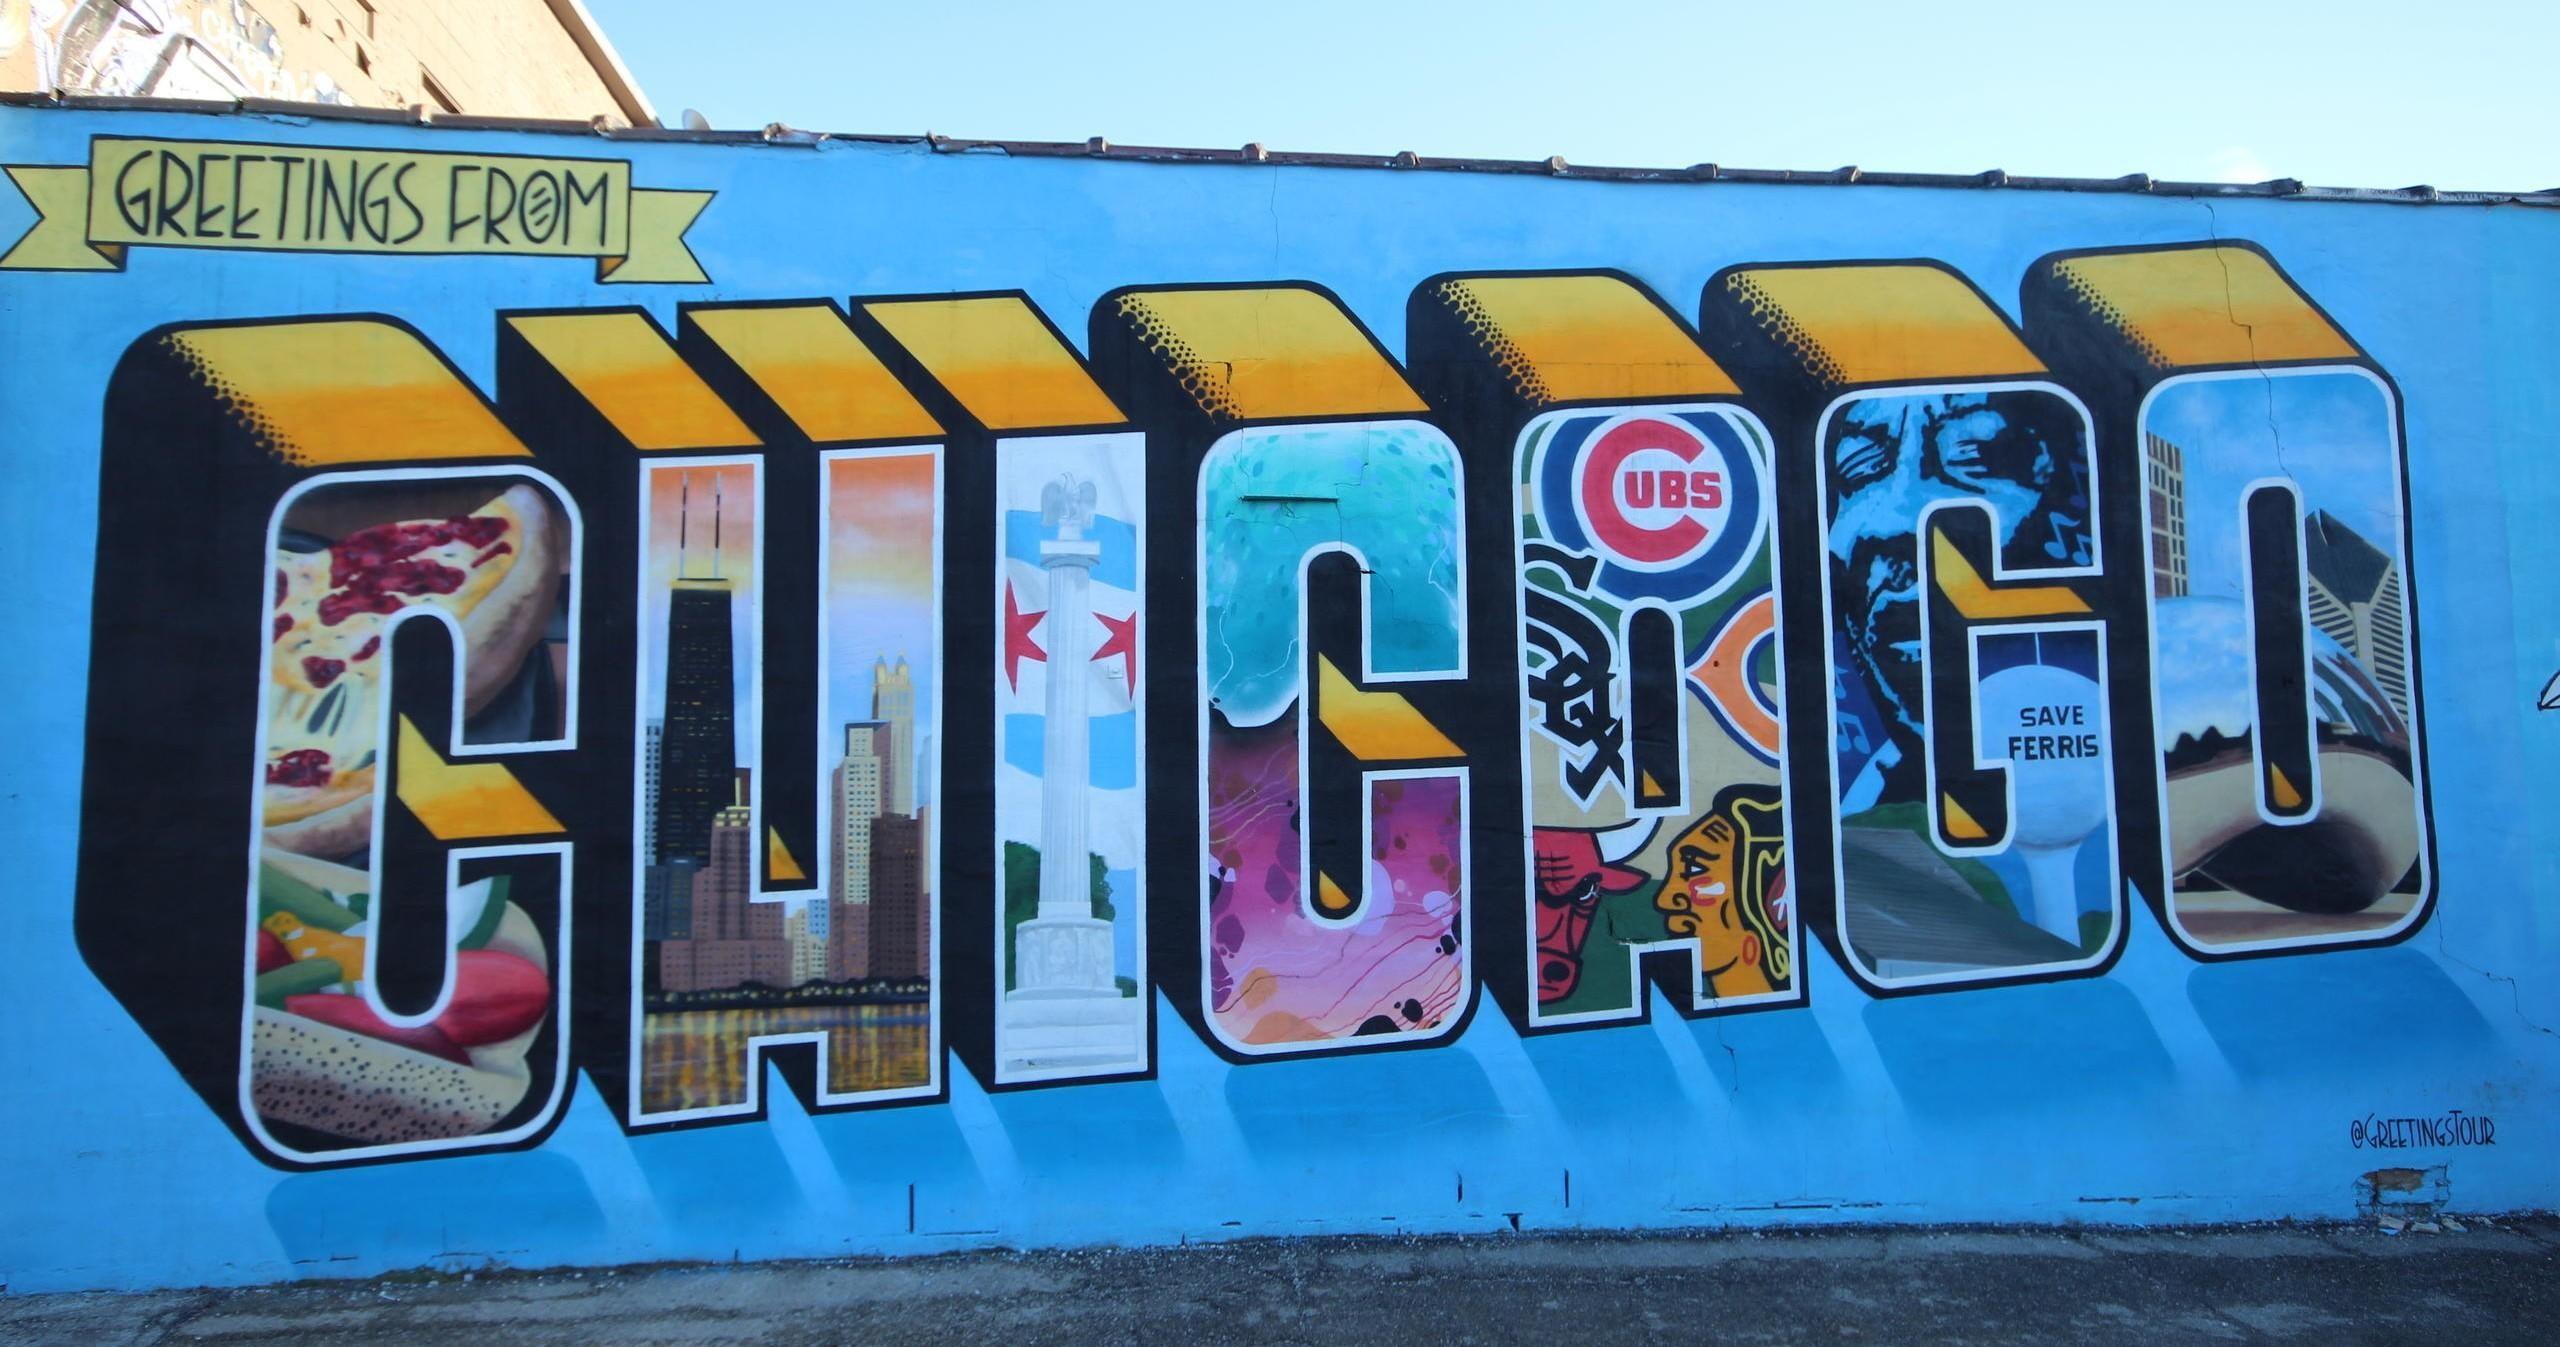 Offbeat Street Art Tour Celebrating Chicago’s Street Art Scene image 2